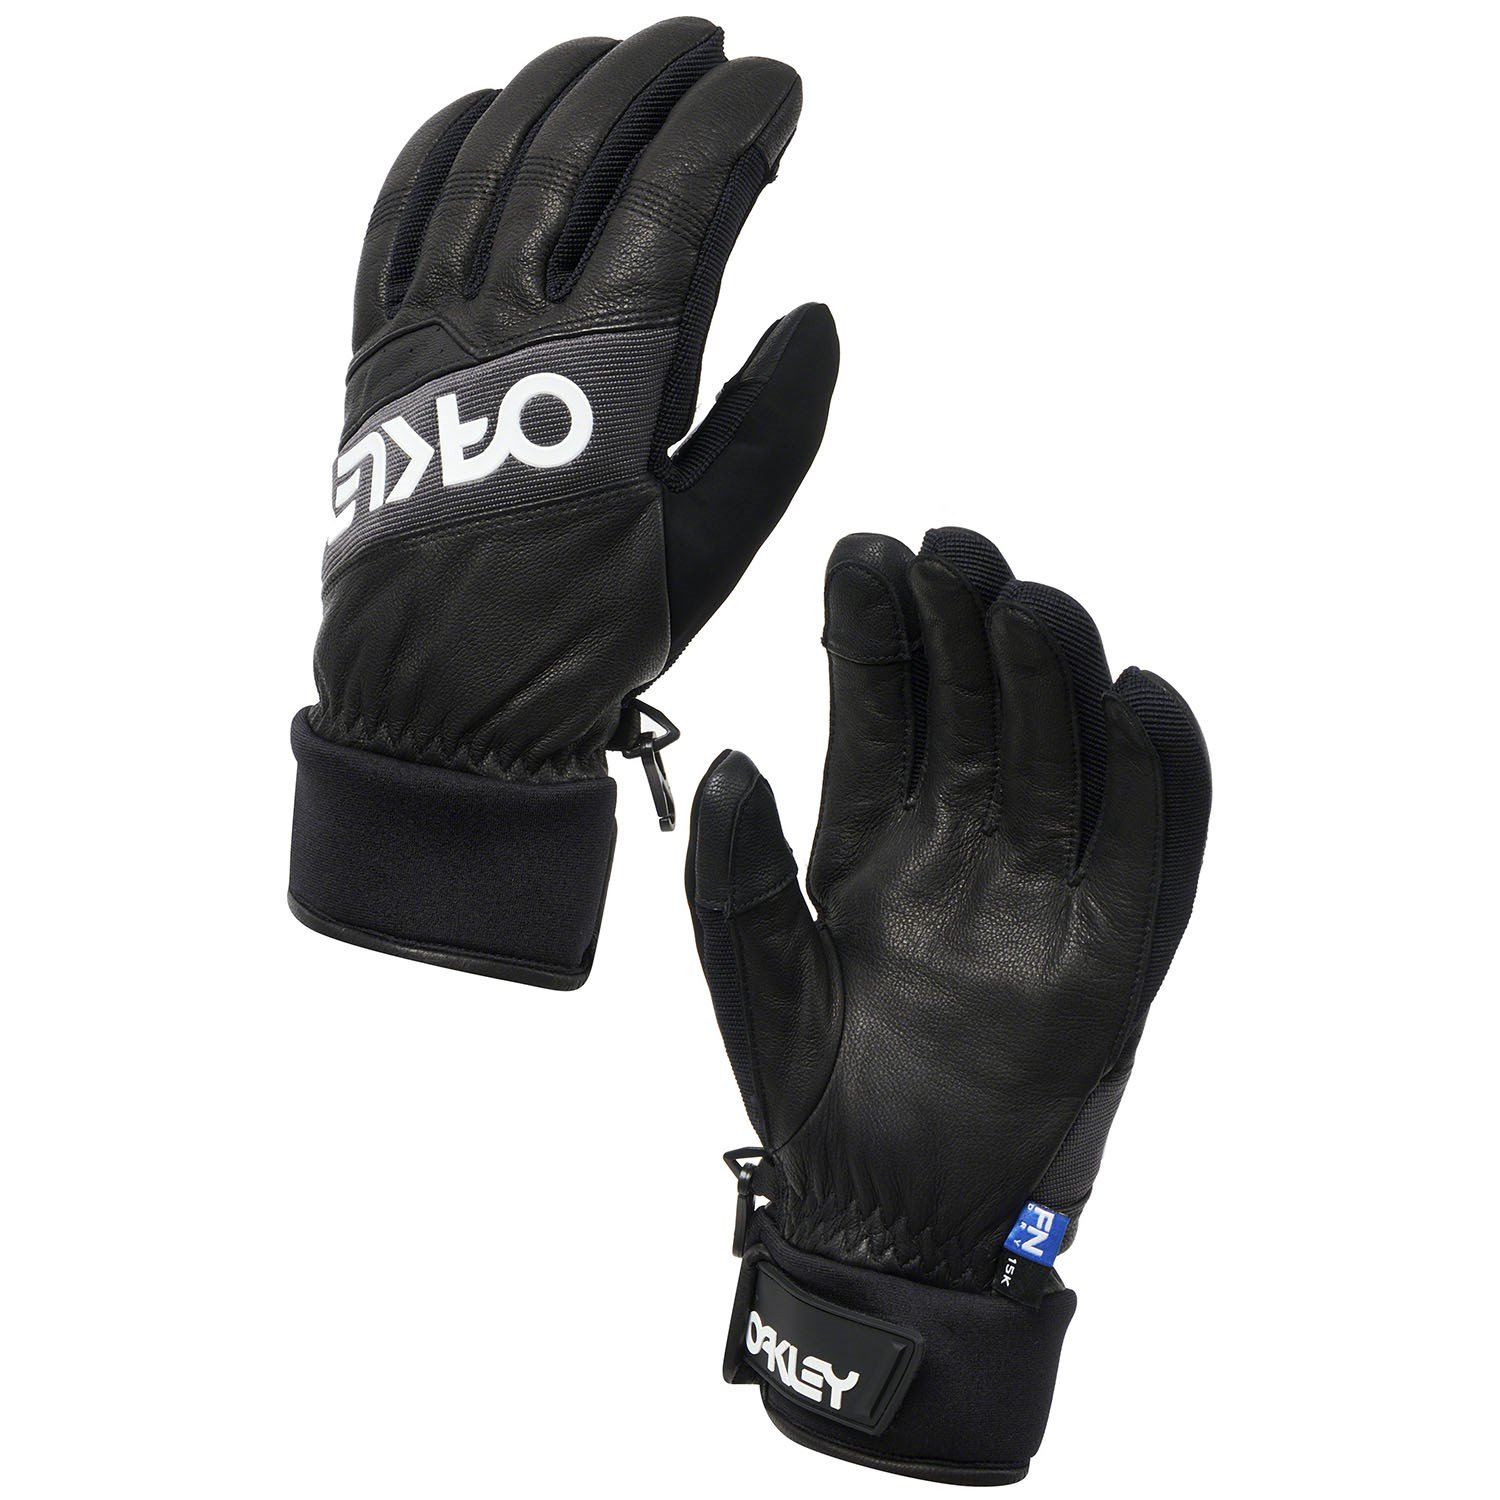 oakley waterproof gloves